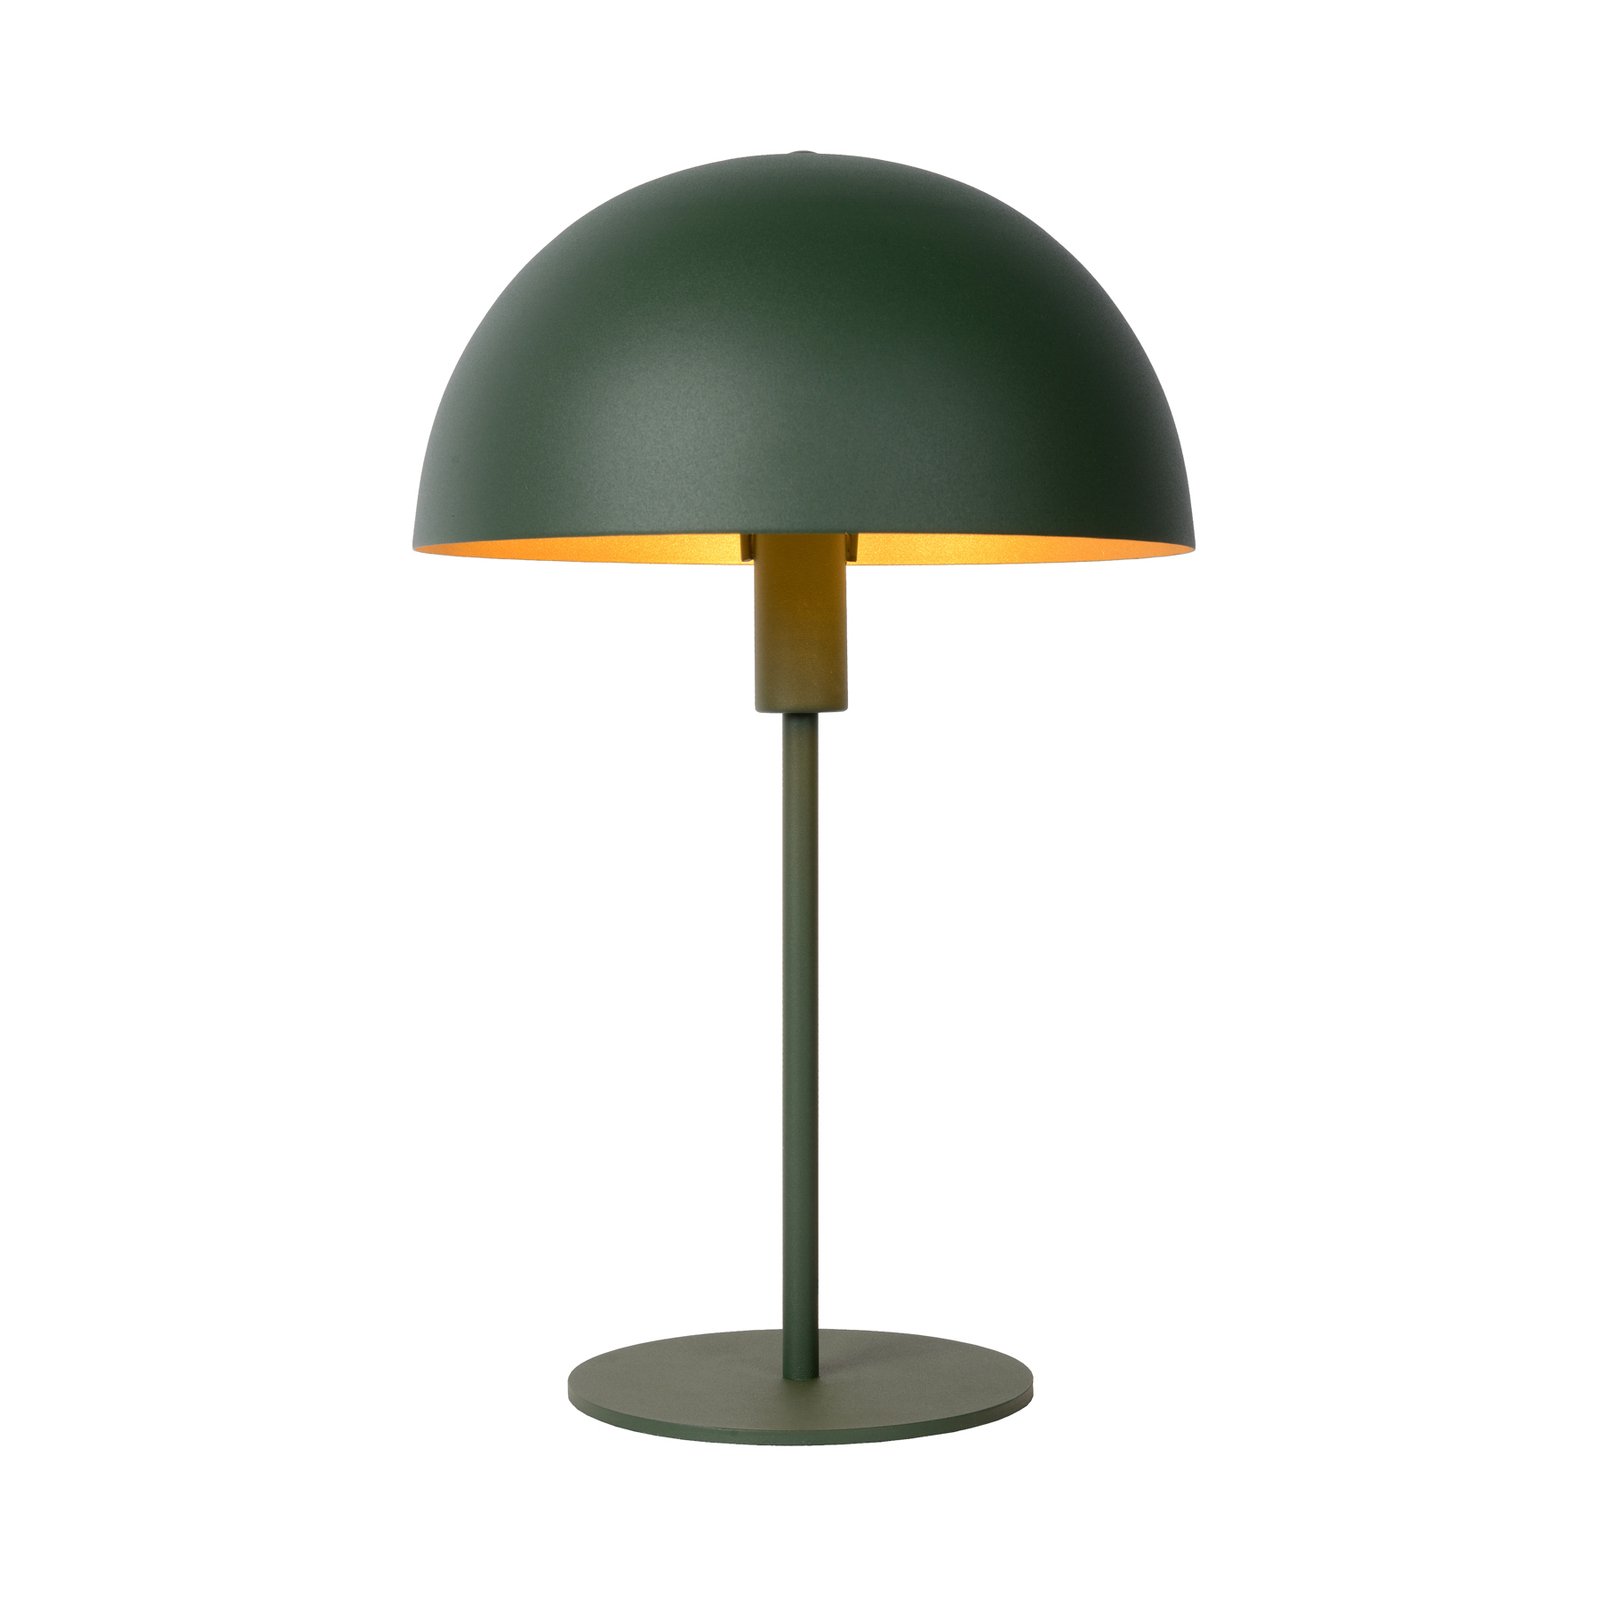 Siemon bordlampe i stål, Ø 25 cm, grønn